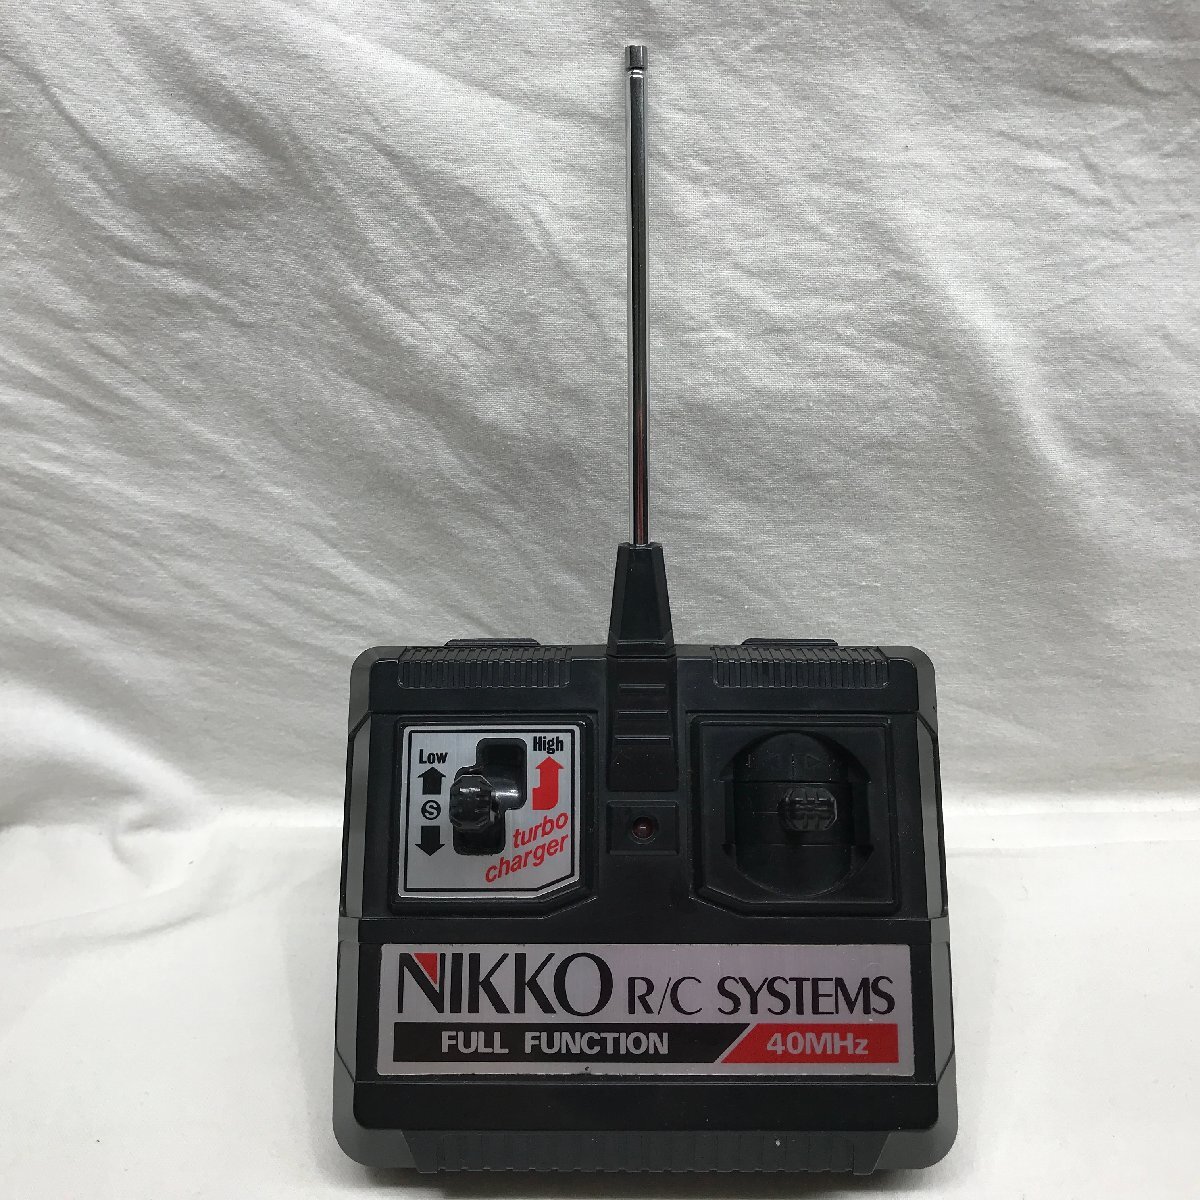  работоспособность не проверялась товар Nikko радио контроль SSP-SKYLINE TURBO 1/20 шкала маска патрульная машина ska G турбо 